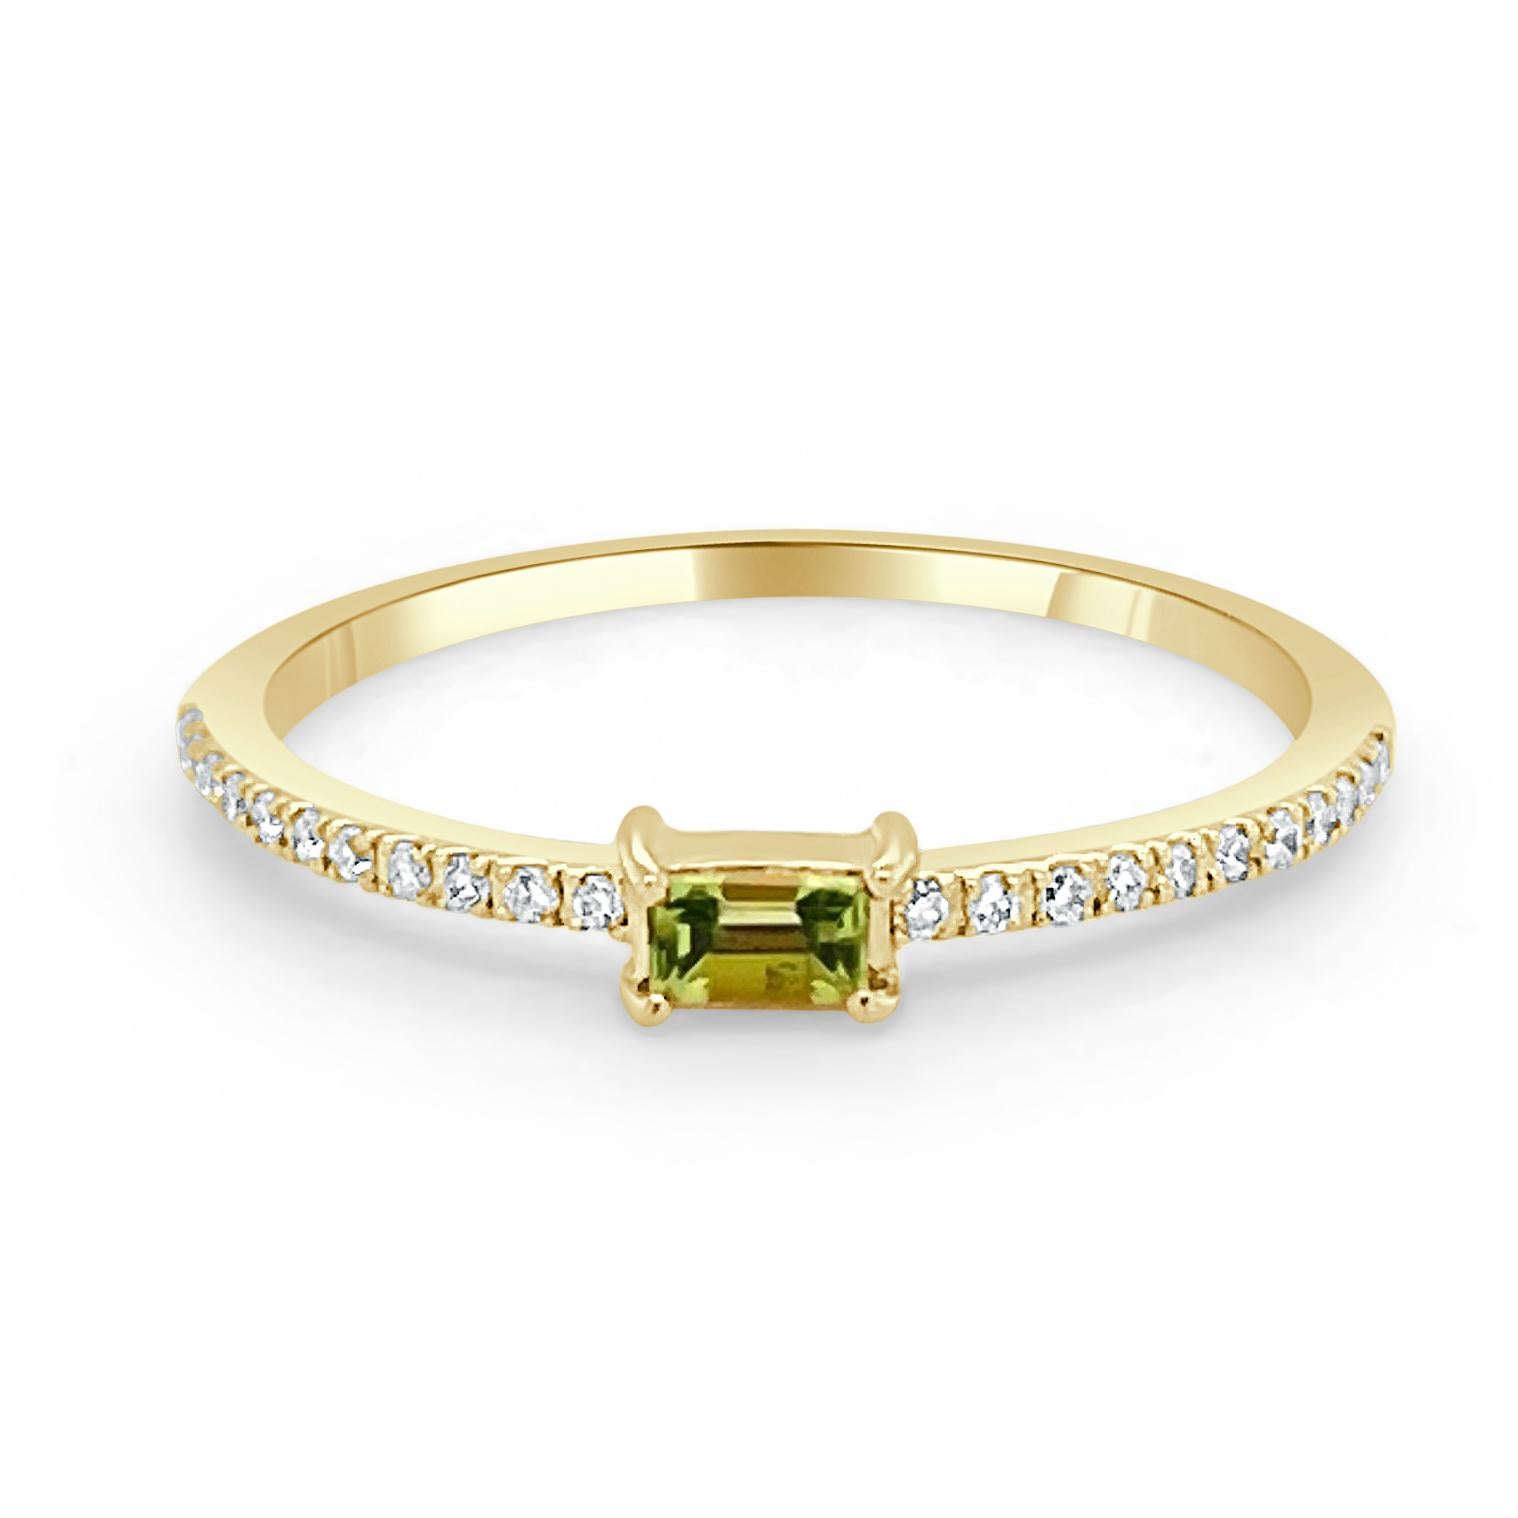 Charmantes und schwer fassbares Design - Dieser stapelbare Ring besteht aus einem 14-karätigen Goldband, einem baguettförmigen, wunderschönen Peridot von ca. 0,16 ct und runden Diamanten von ca. 0,09 ct. 
Maße für die Ringgröße: Die Fingergröße des